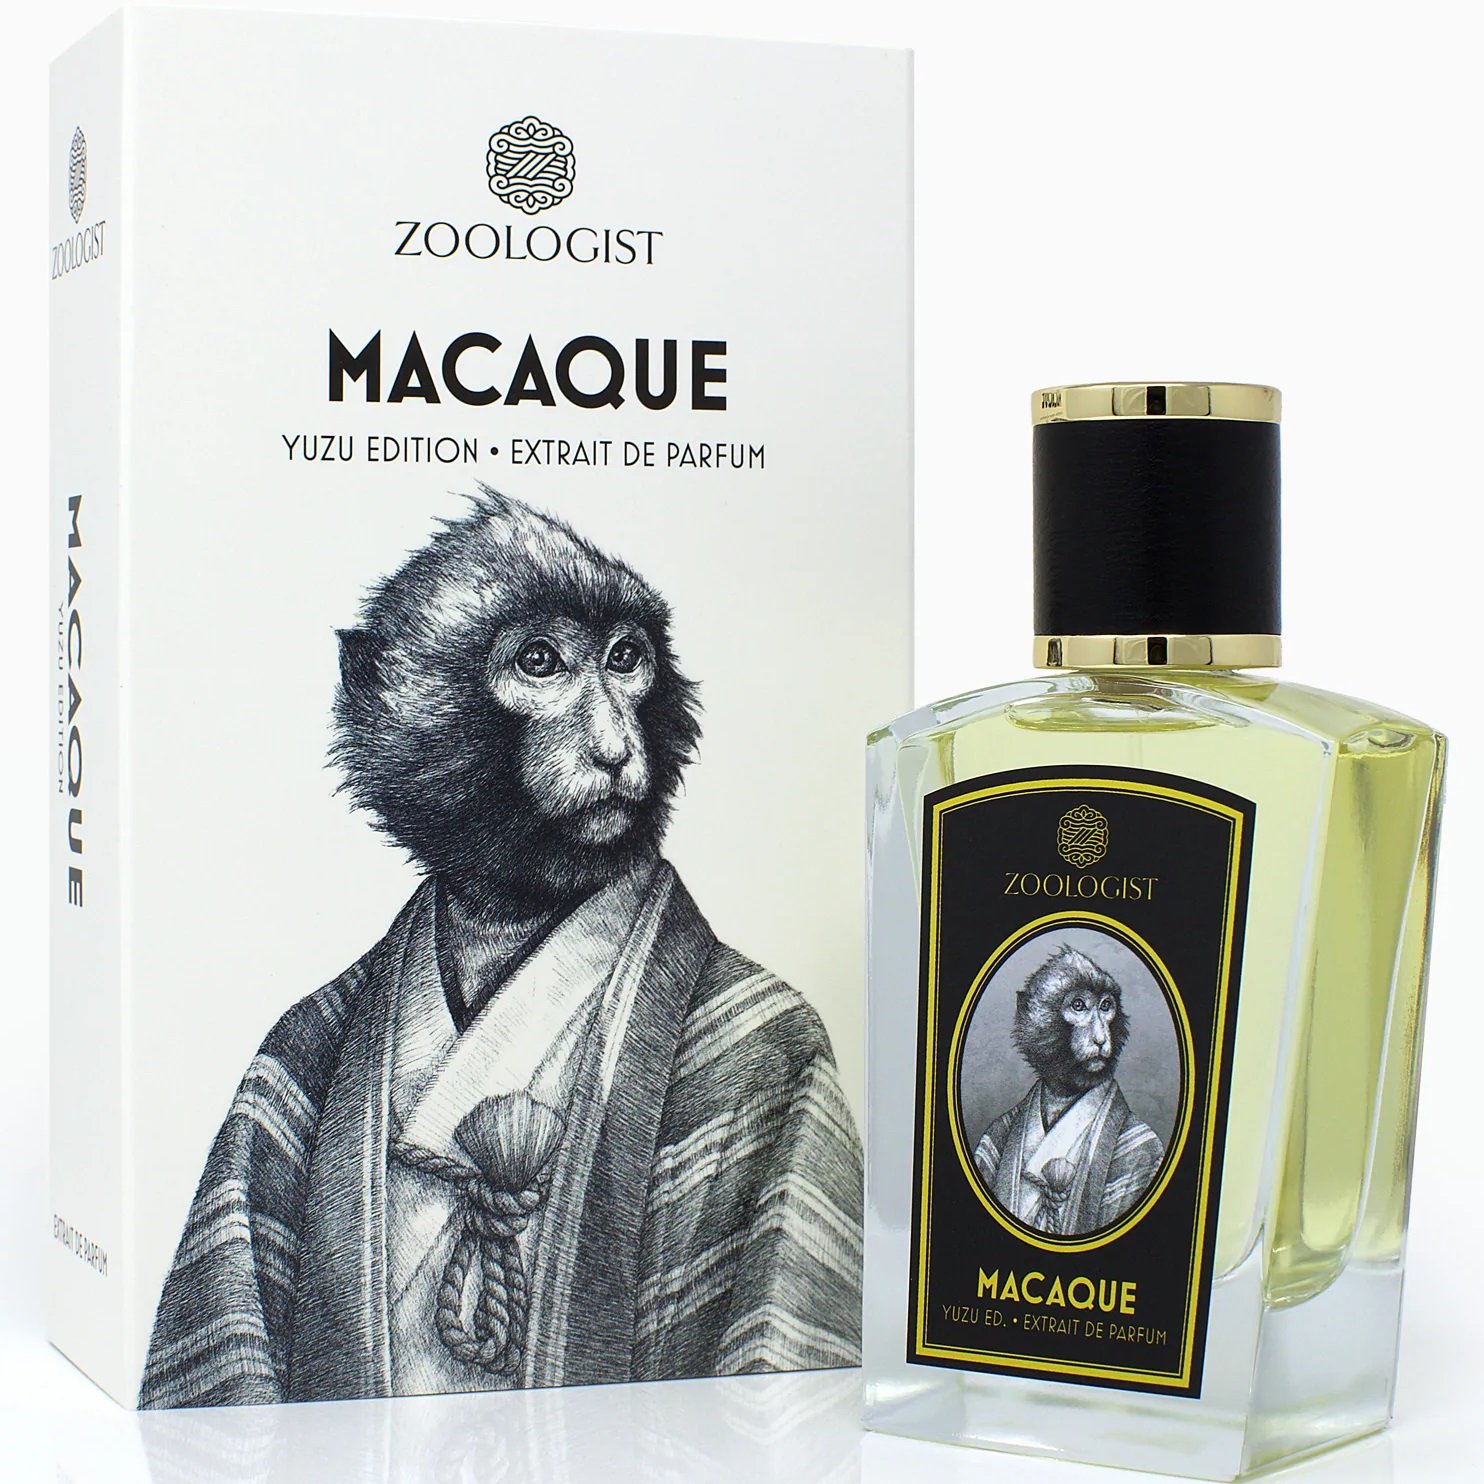 Macaque Yuzu Edition